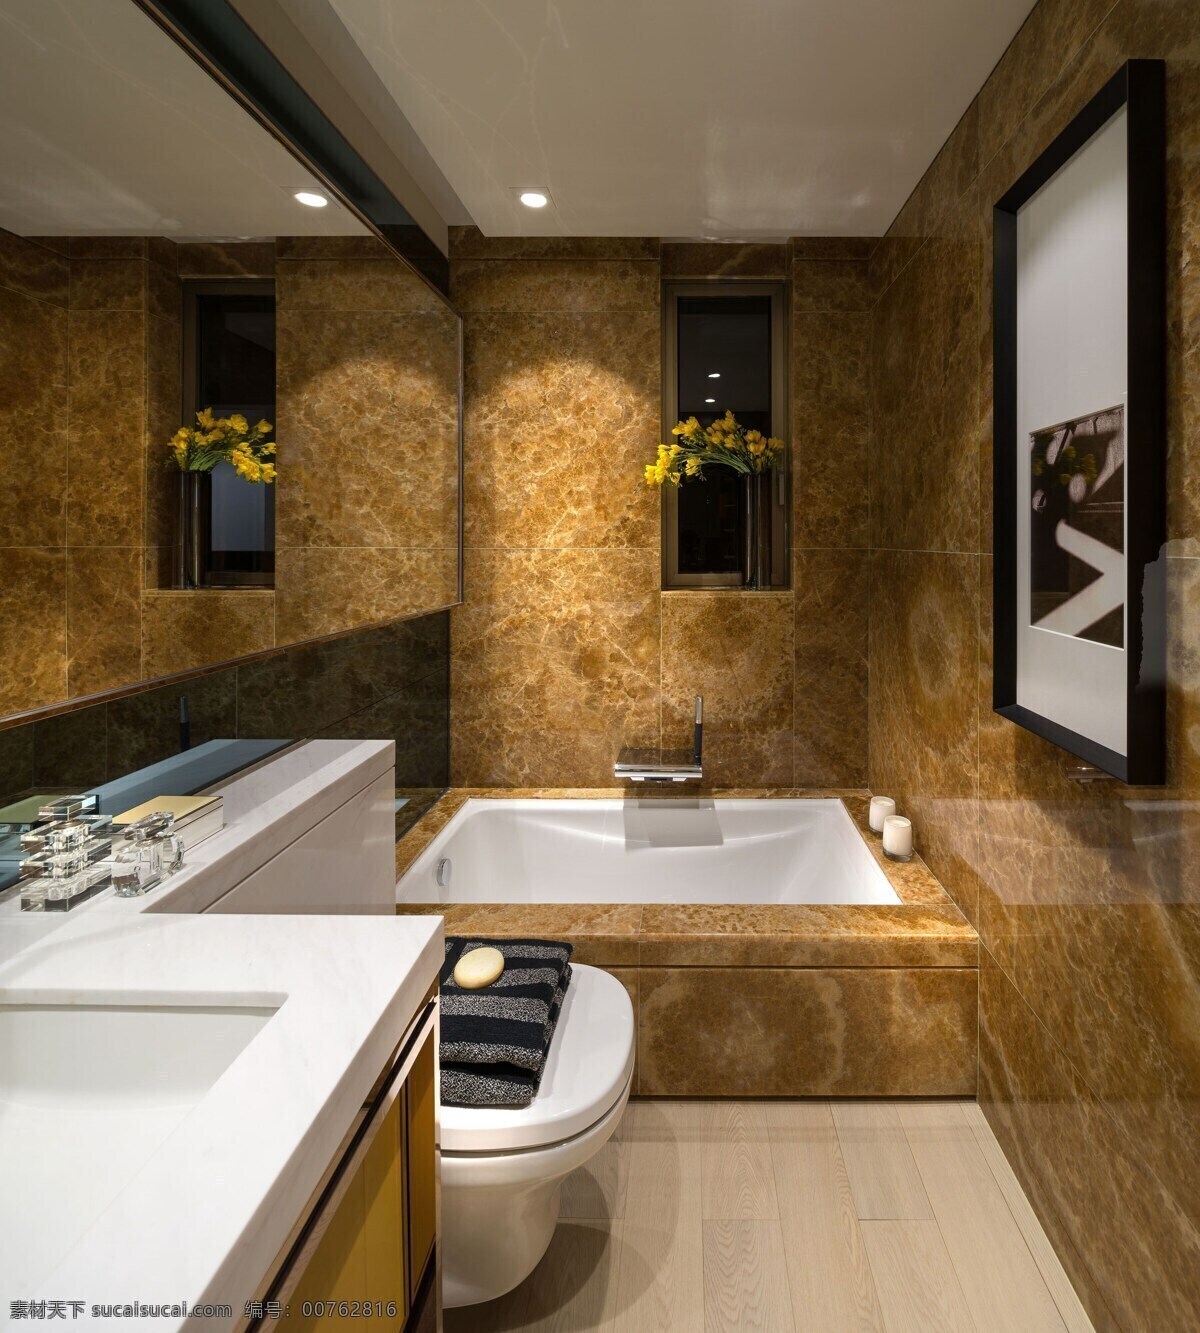 现代 土黄色 瓷砖 背景 墙 卫生间 室内装修 效果图 浅色地板 瓷砖背景墙 土黄色背景墙 白色洗手台 金色柜子